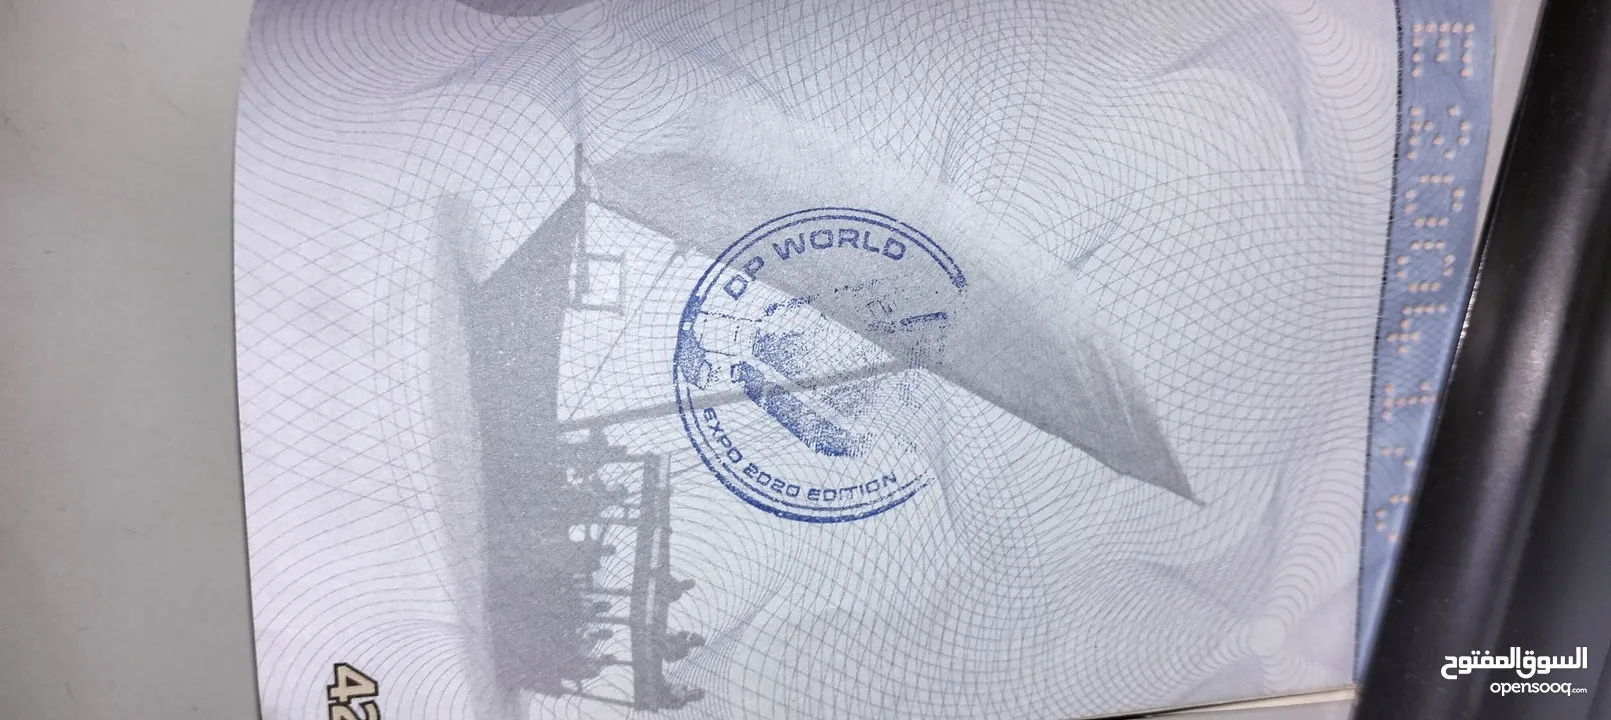 جواز سفر اكسبو 2020 دبي للبيع